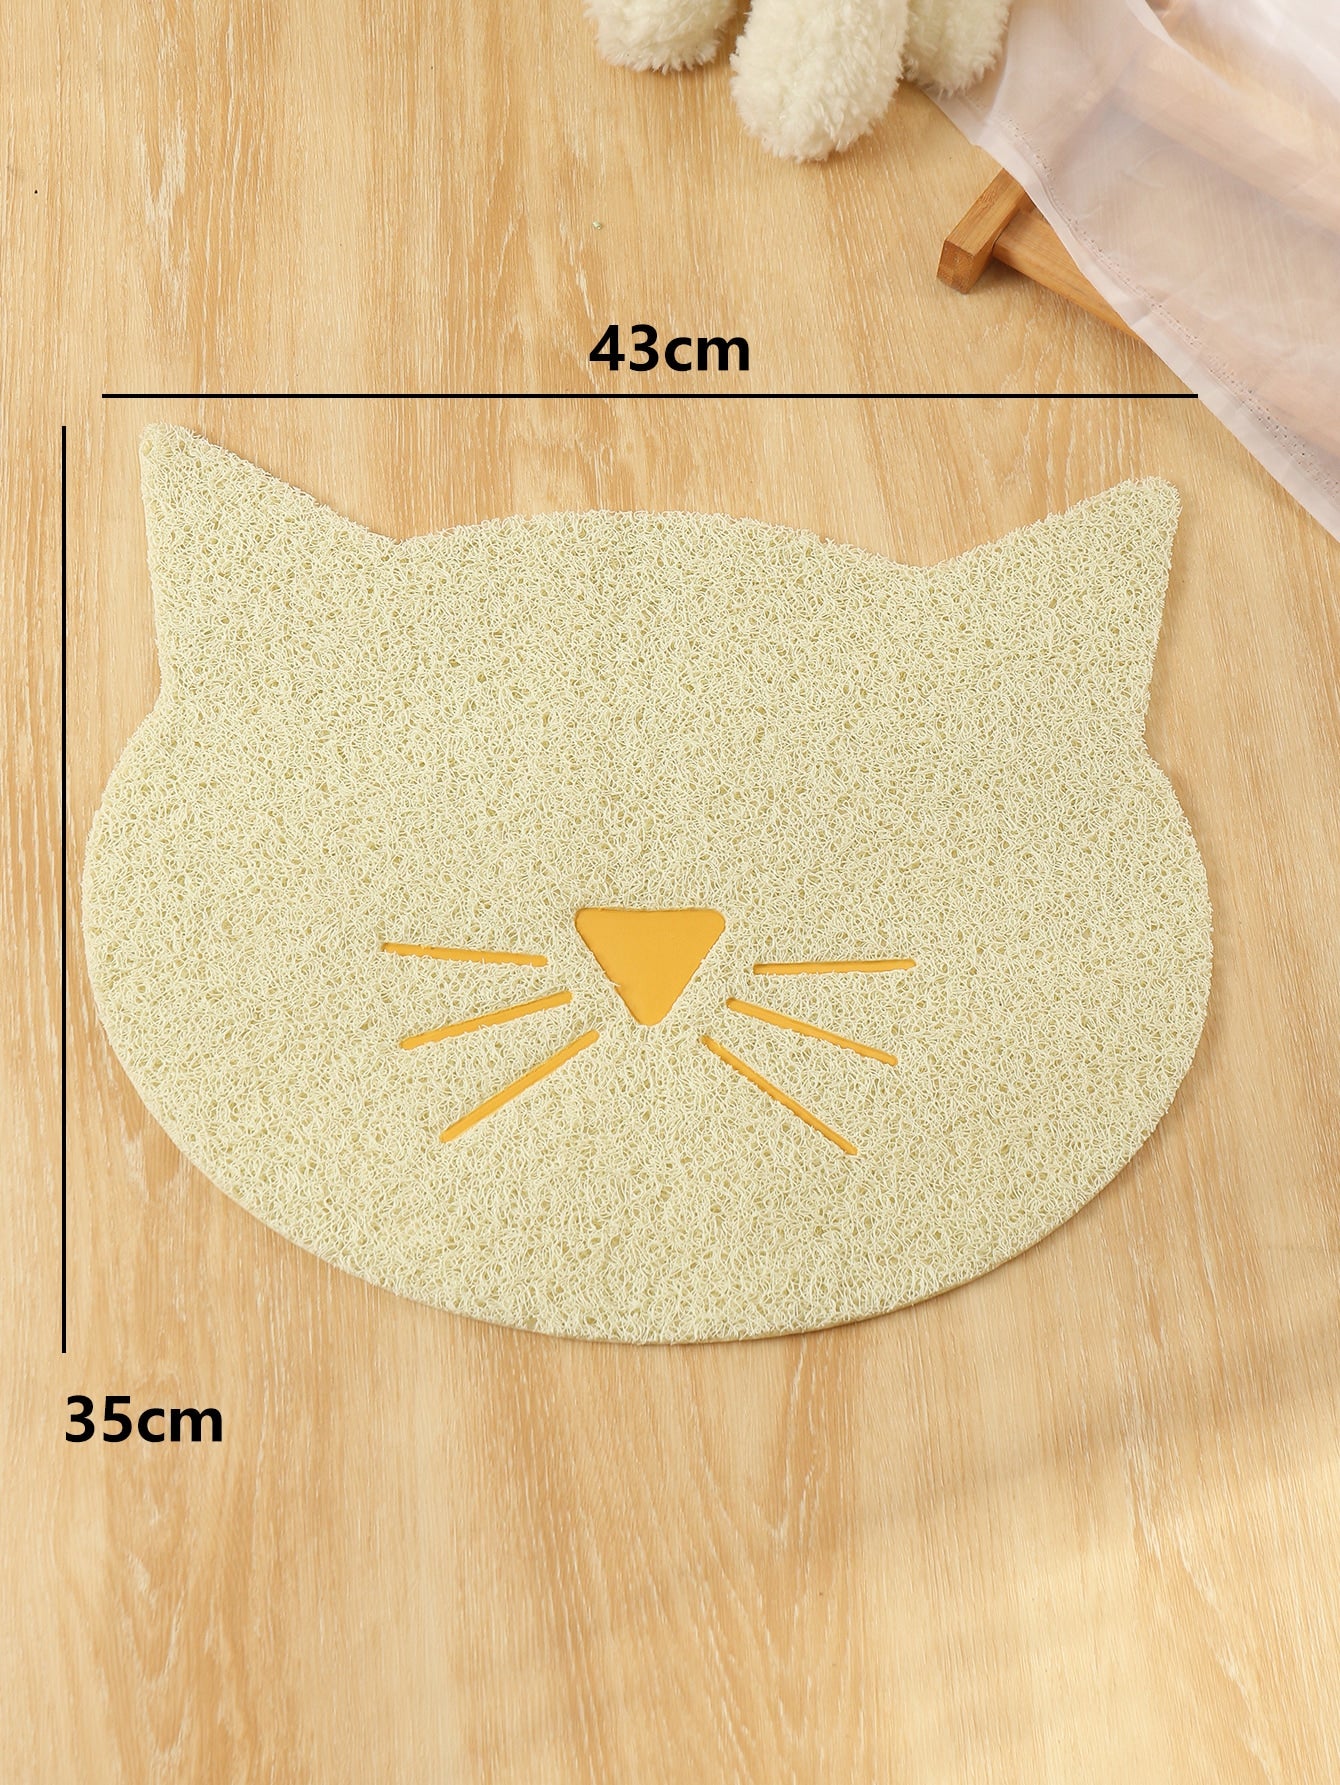 Cartoon Design Cat Litter Mat